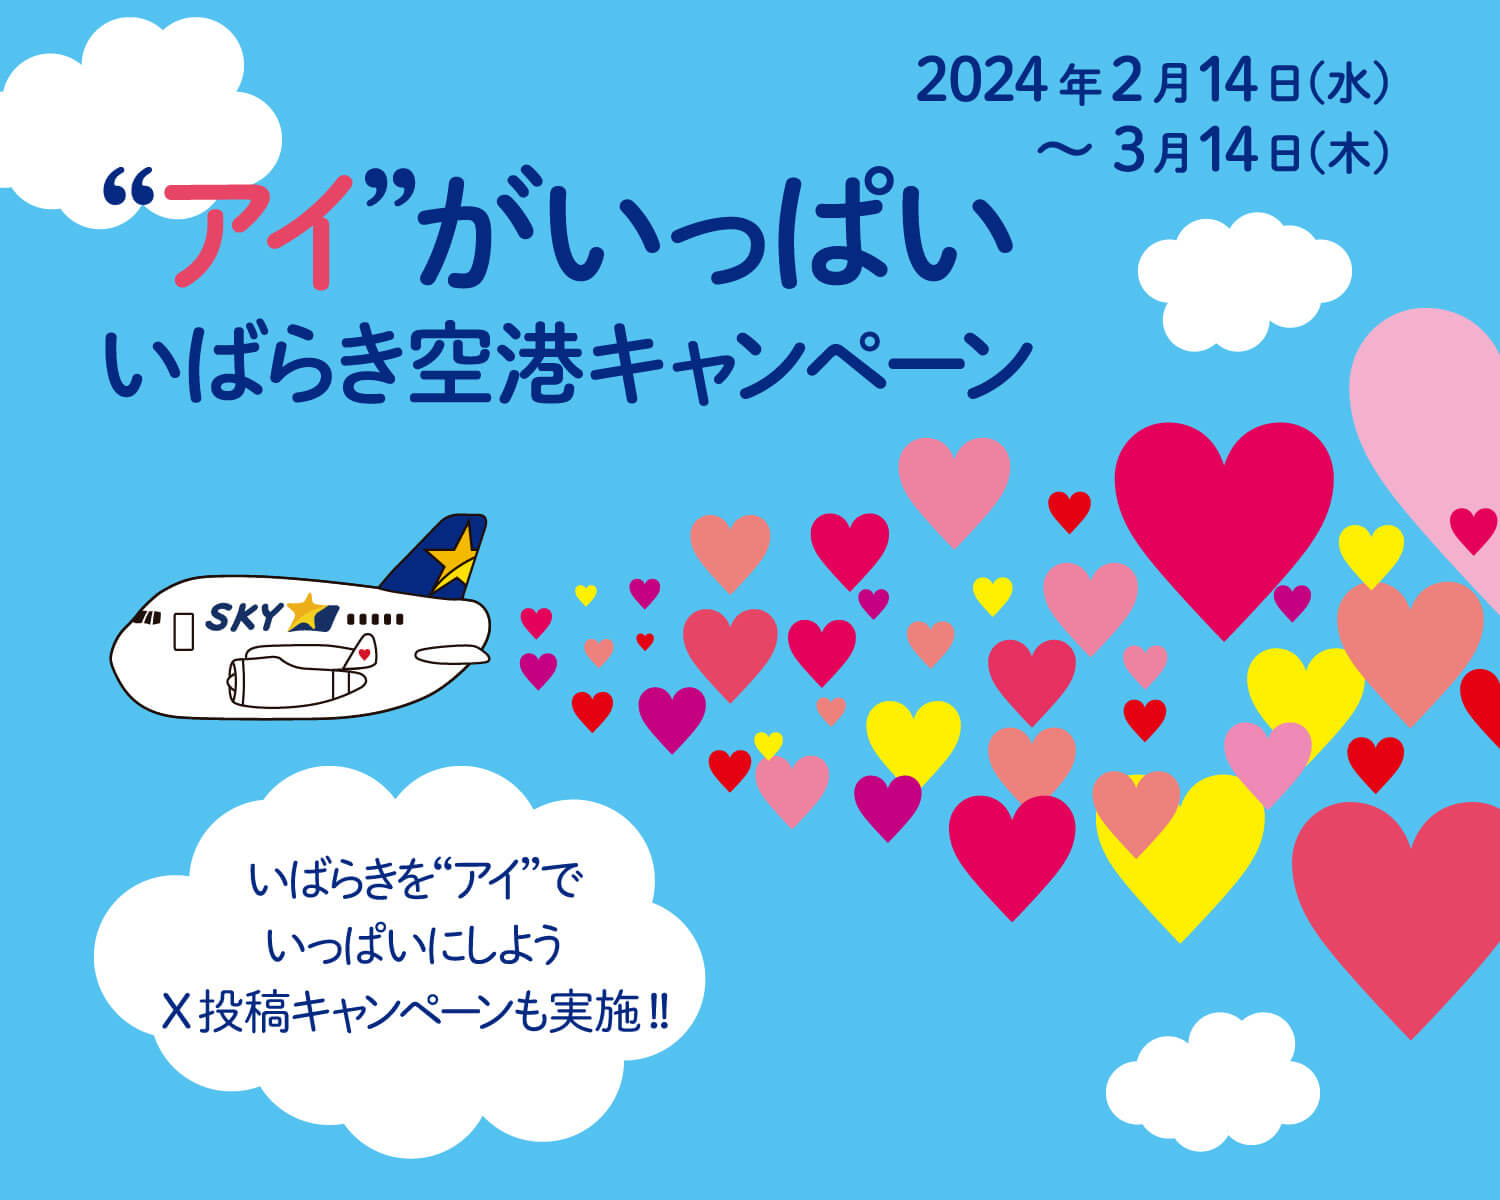 2024年2月14日（水）～3月14日（木）アイがいっぱいいばらき空港キャンペーン いばらきをアイでいっぱいにしようX投稿キャンペーンも実施！